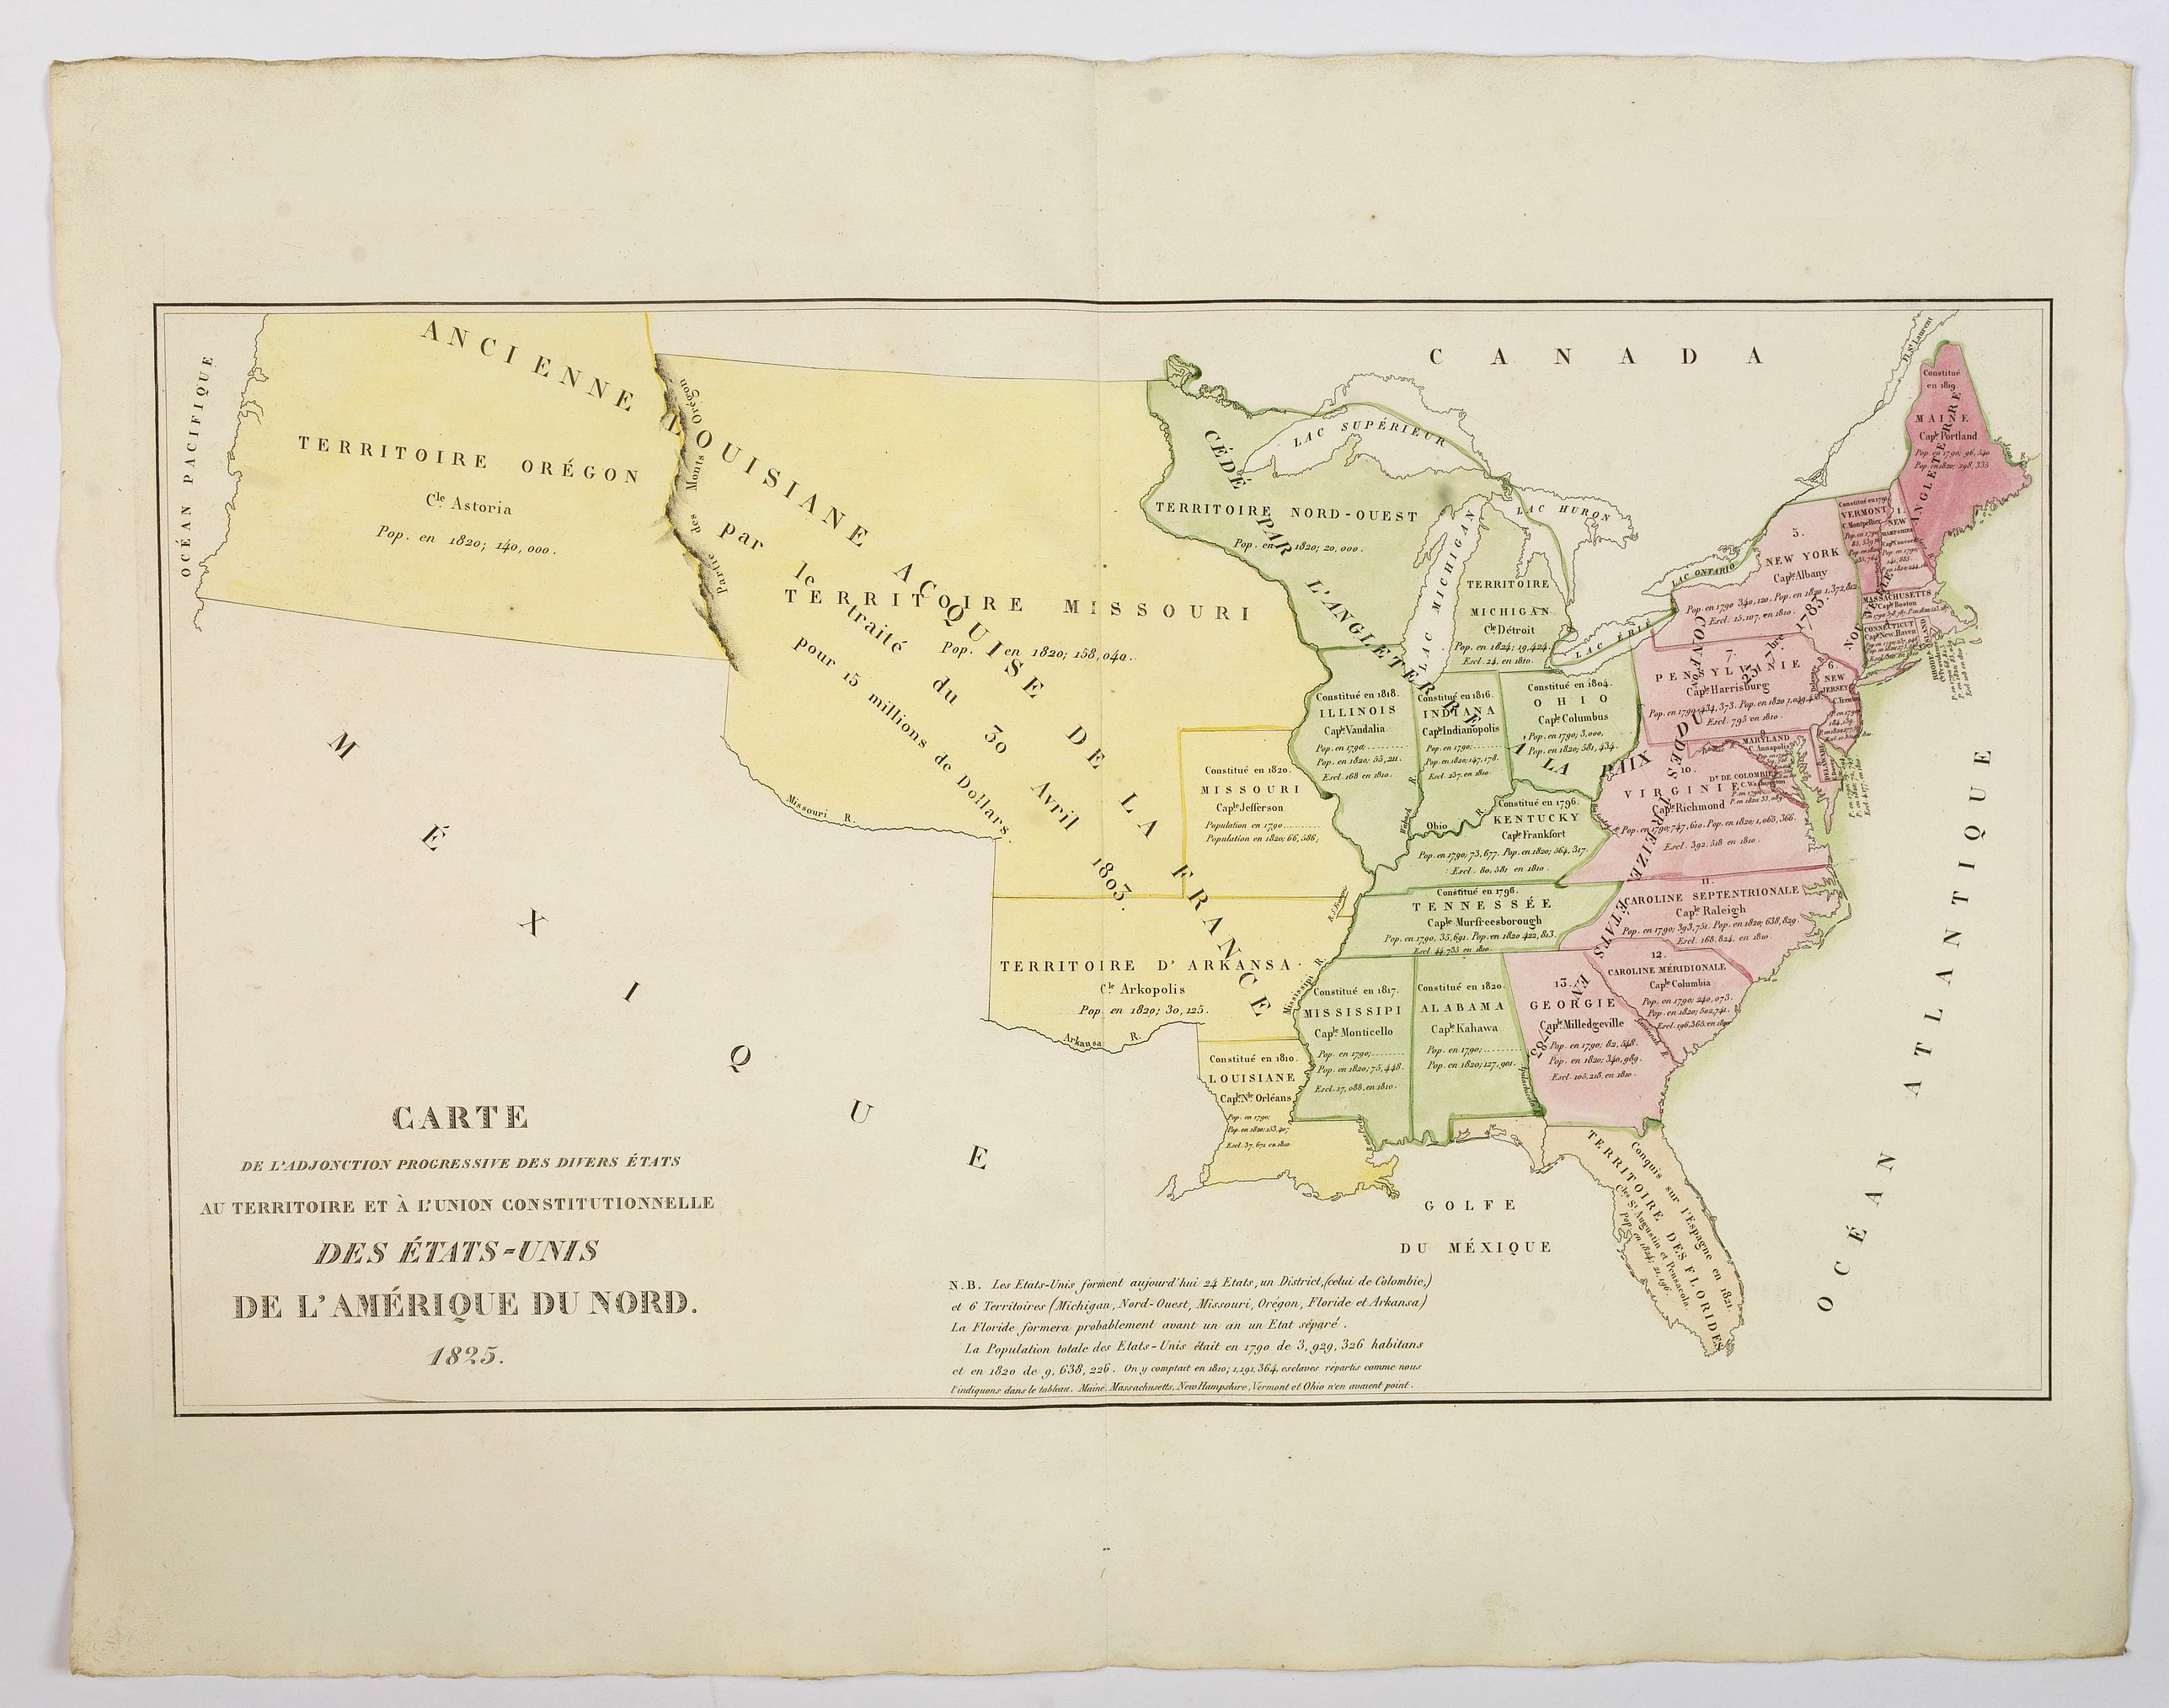 Carte de l'Adjonction Progressive des divers Etats au Territoire et a l'Union Constitutionnelle des Etats-Unis de l'Amerique du Nord